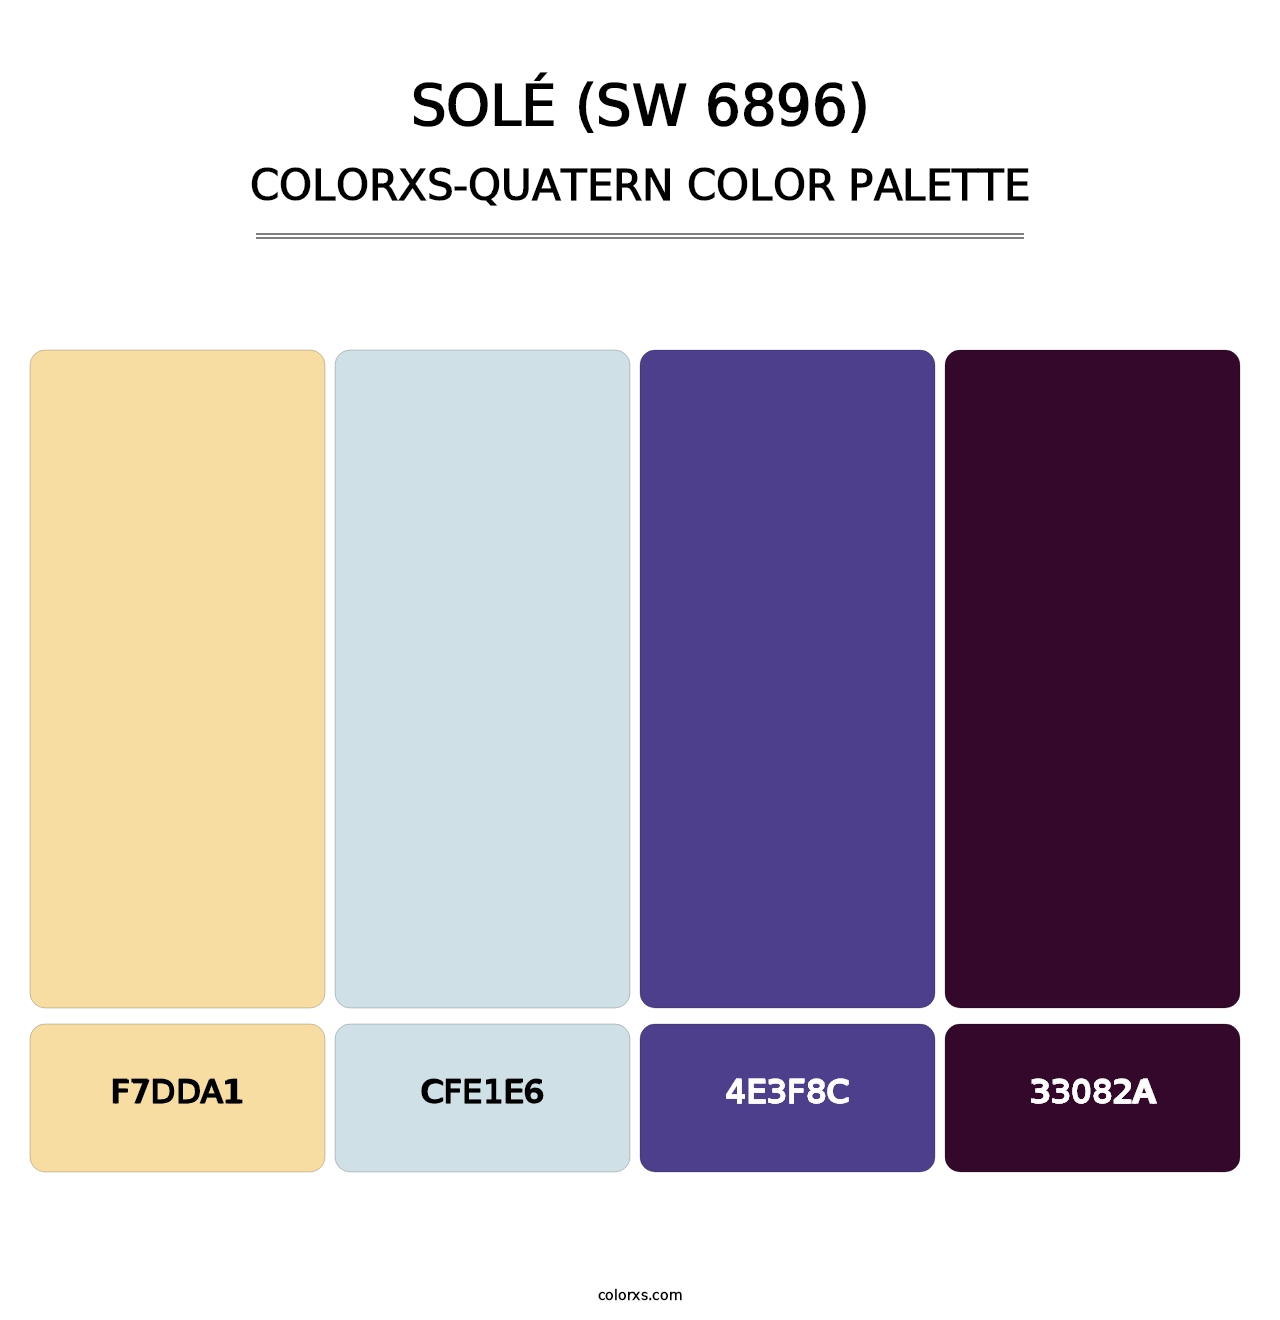 Solé (SW 6896) - Colorxs Quatern Palette